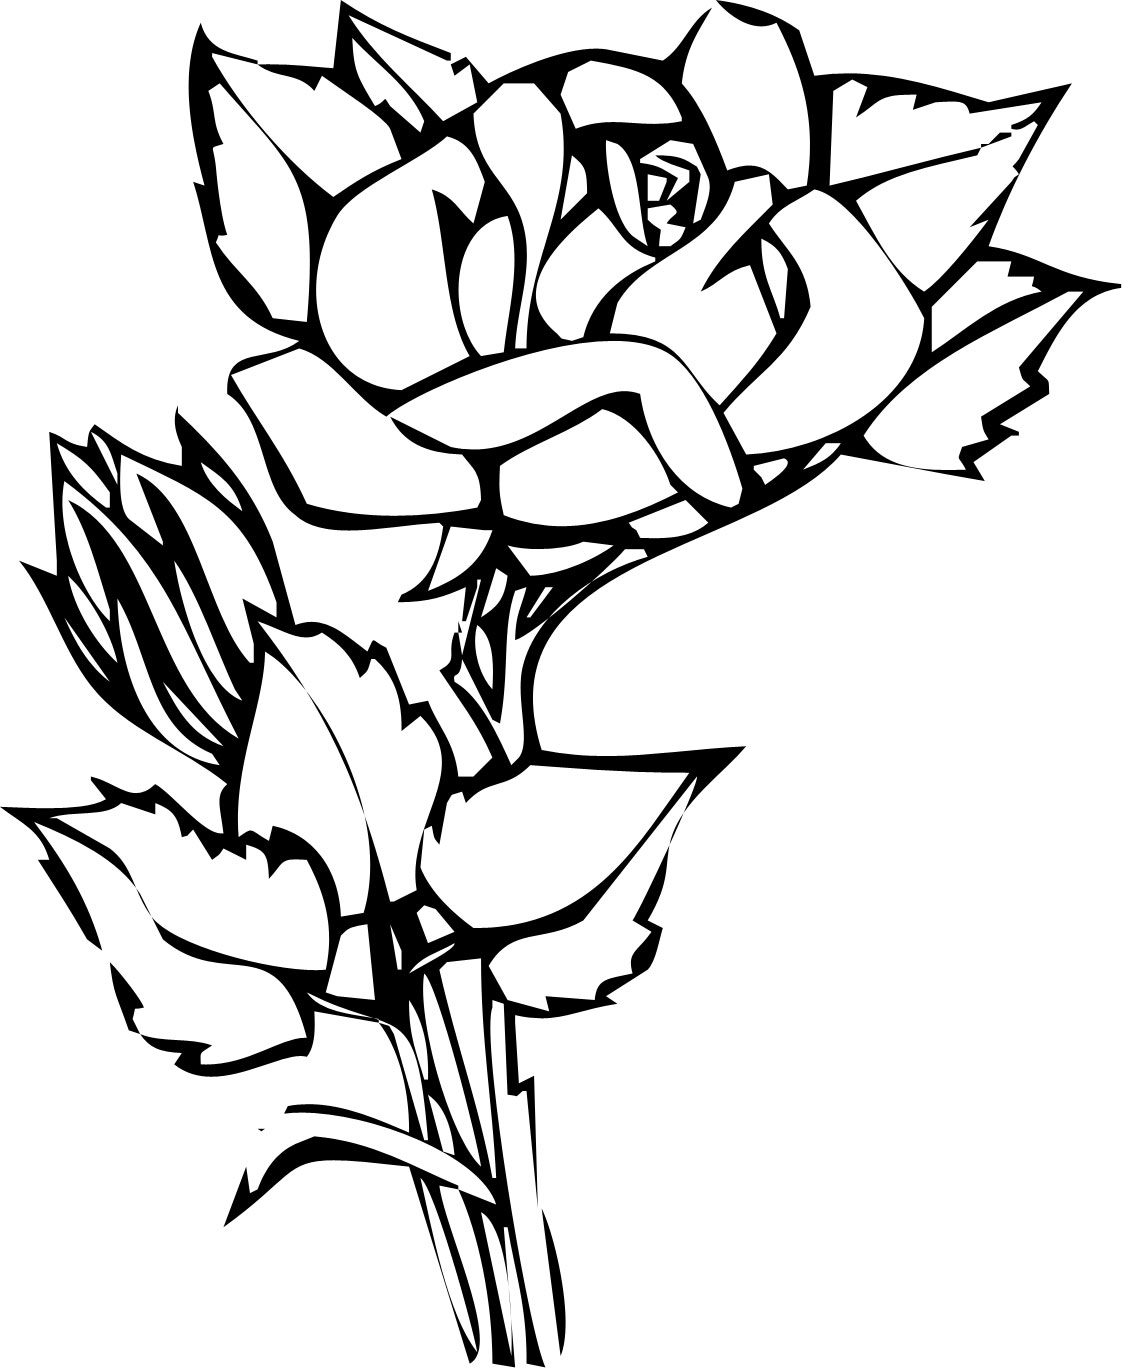 花のイラスト フリー素材 白黒 モノクロno 130 白黒 切り絵風